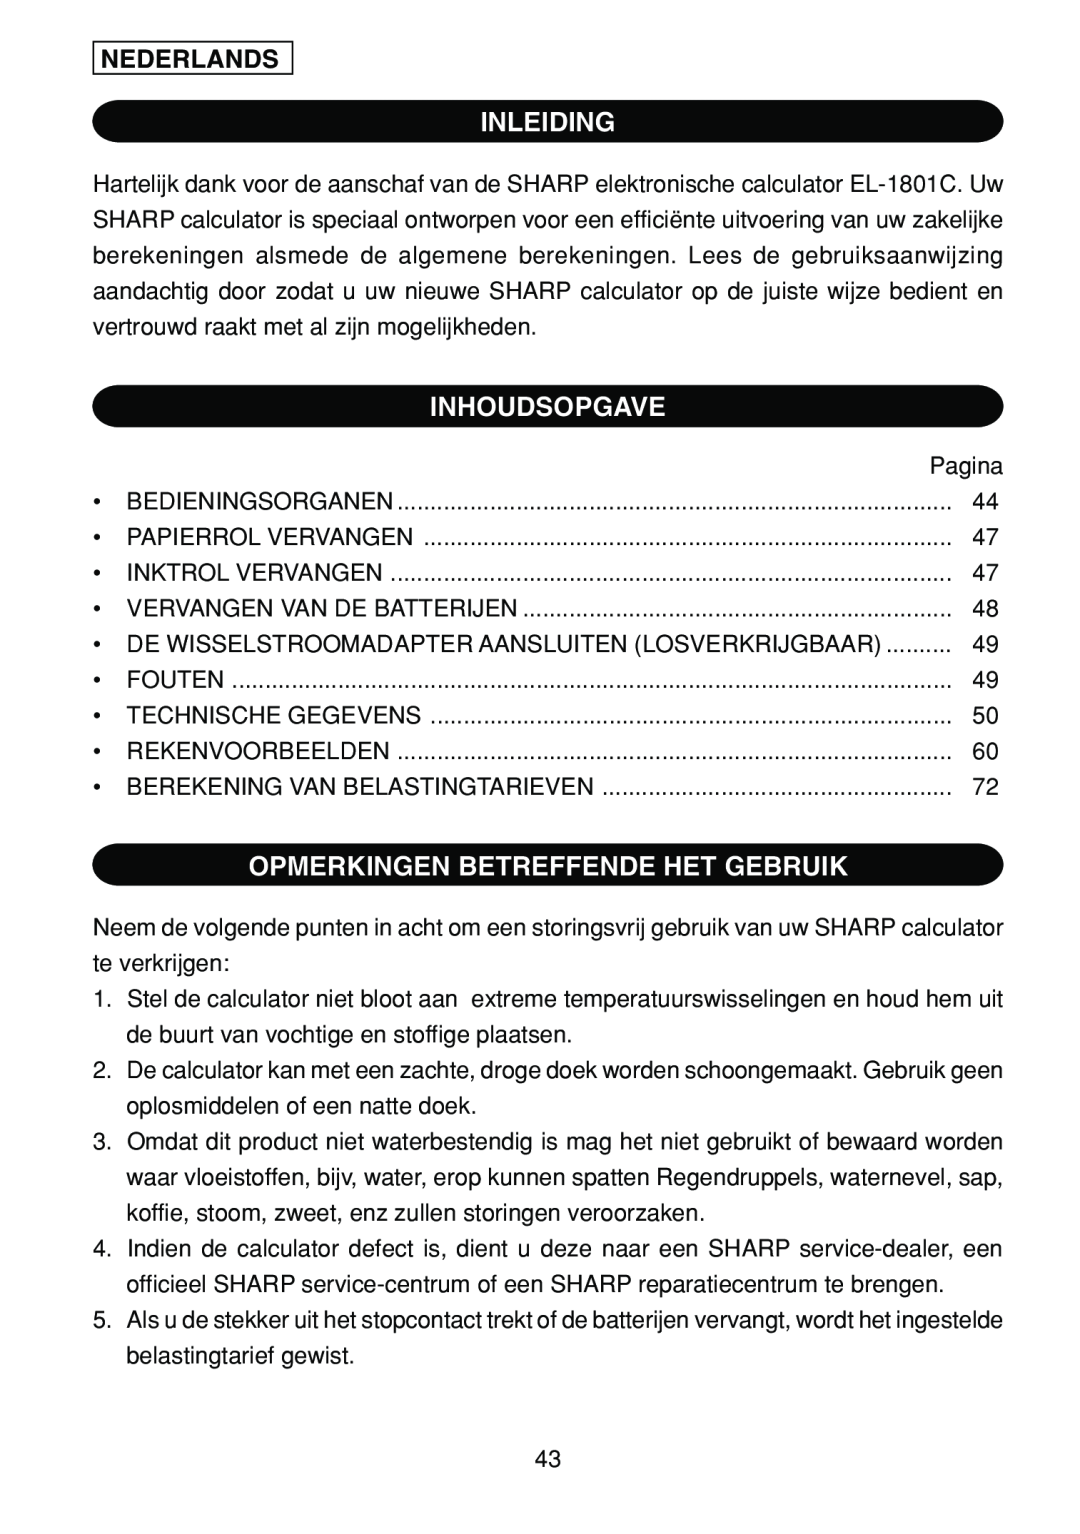 Sharp EL-1801C operation manual Inleiding, Inhoudsopgave, Opmerkingen Betreffende Het Gebruik, Nederlands 